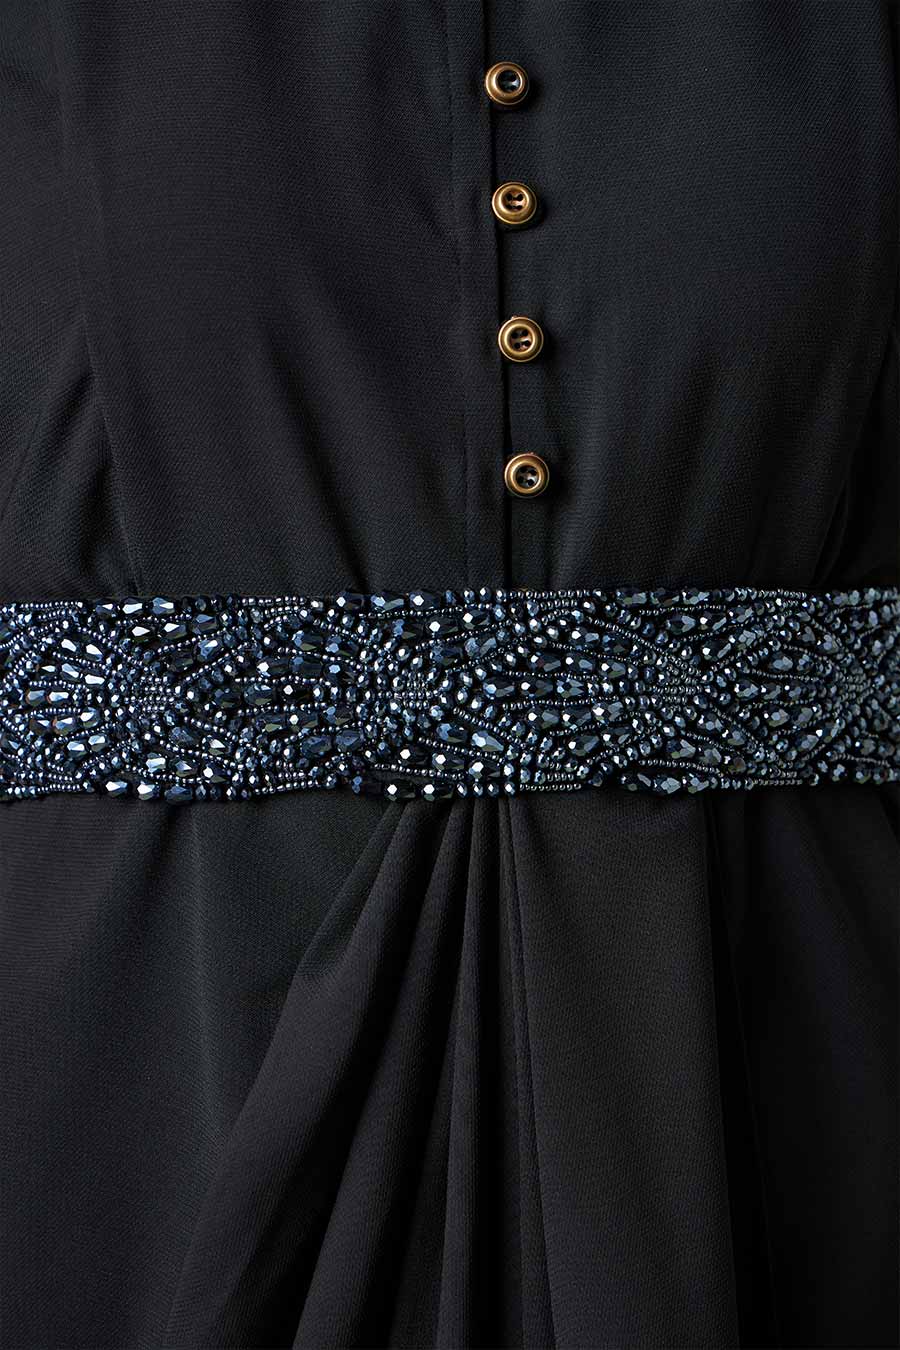 Black Drape Dress With Embellished Belt